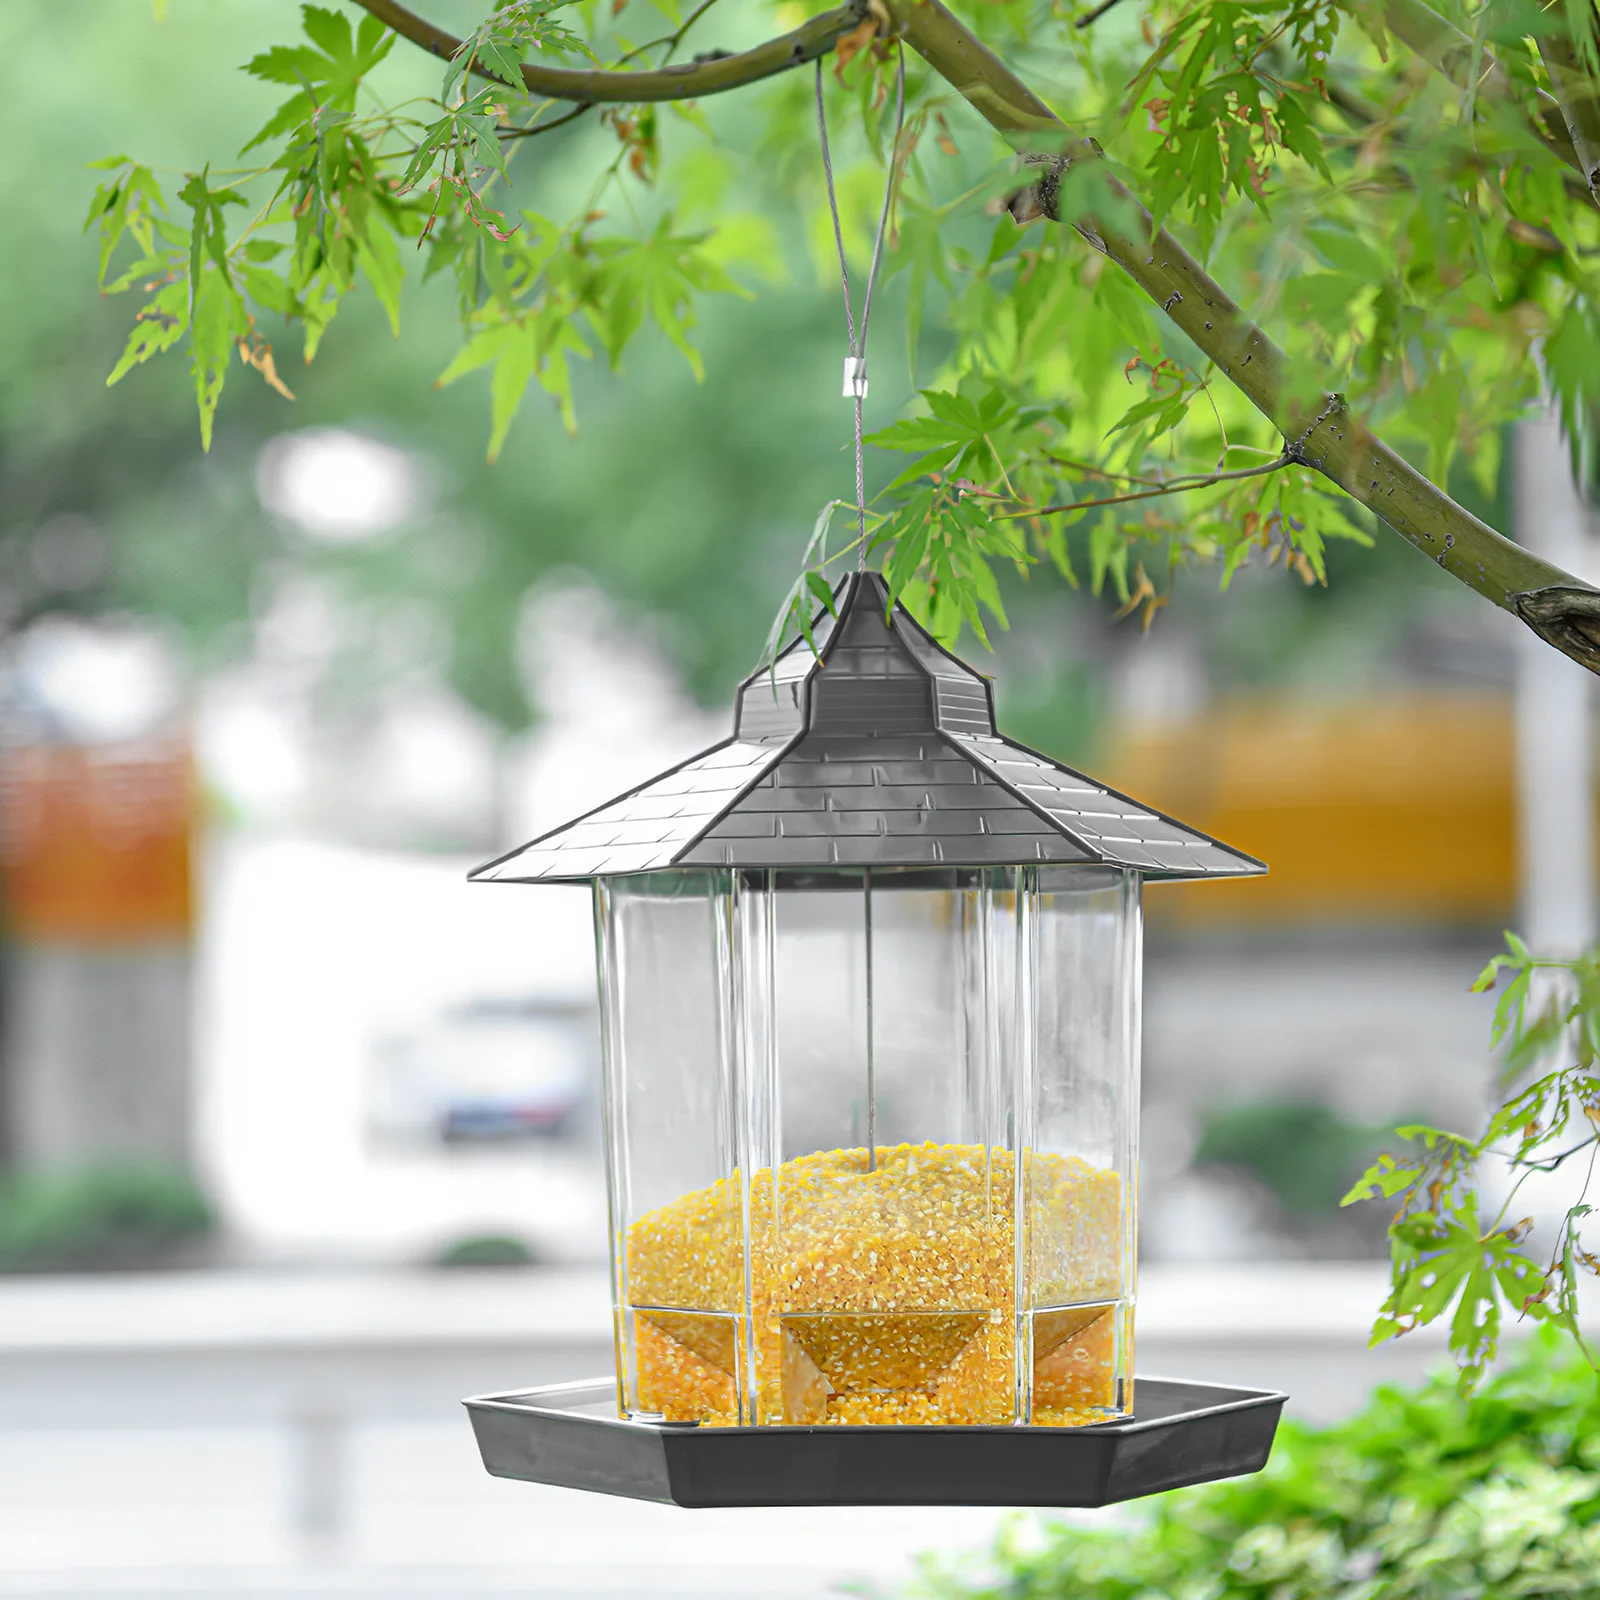 

Деревянная кормушка для птиц, подвесное украшение для сада, двора, Шестигранная форма, настенное уличное гнездо для птиц на крыше